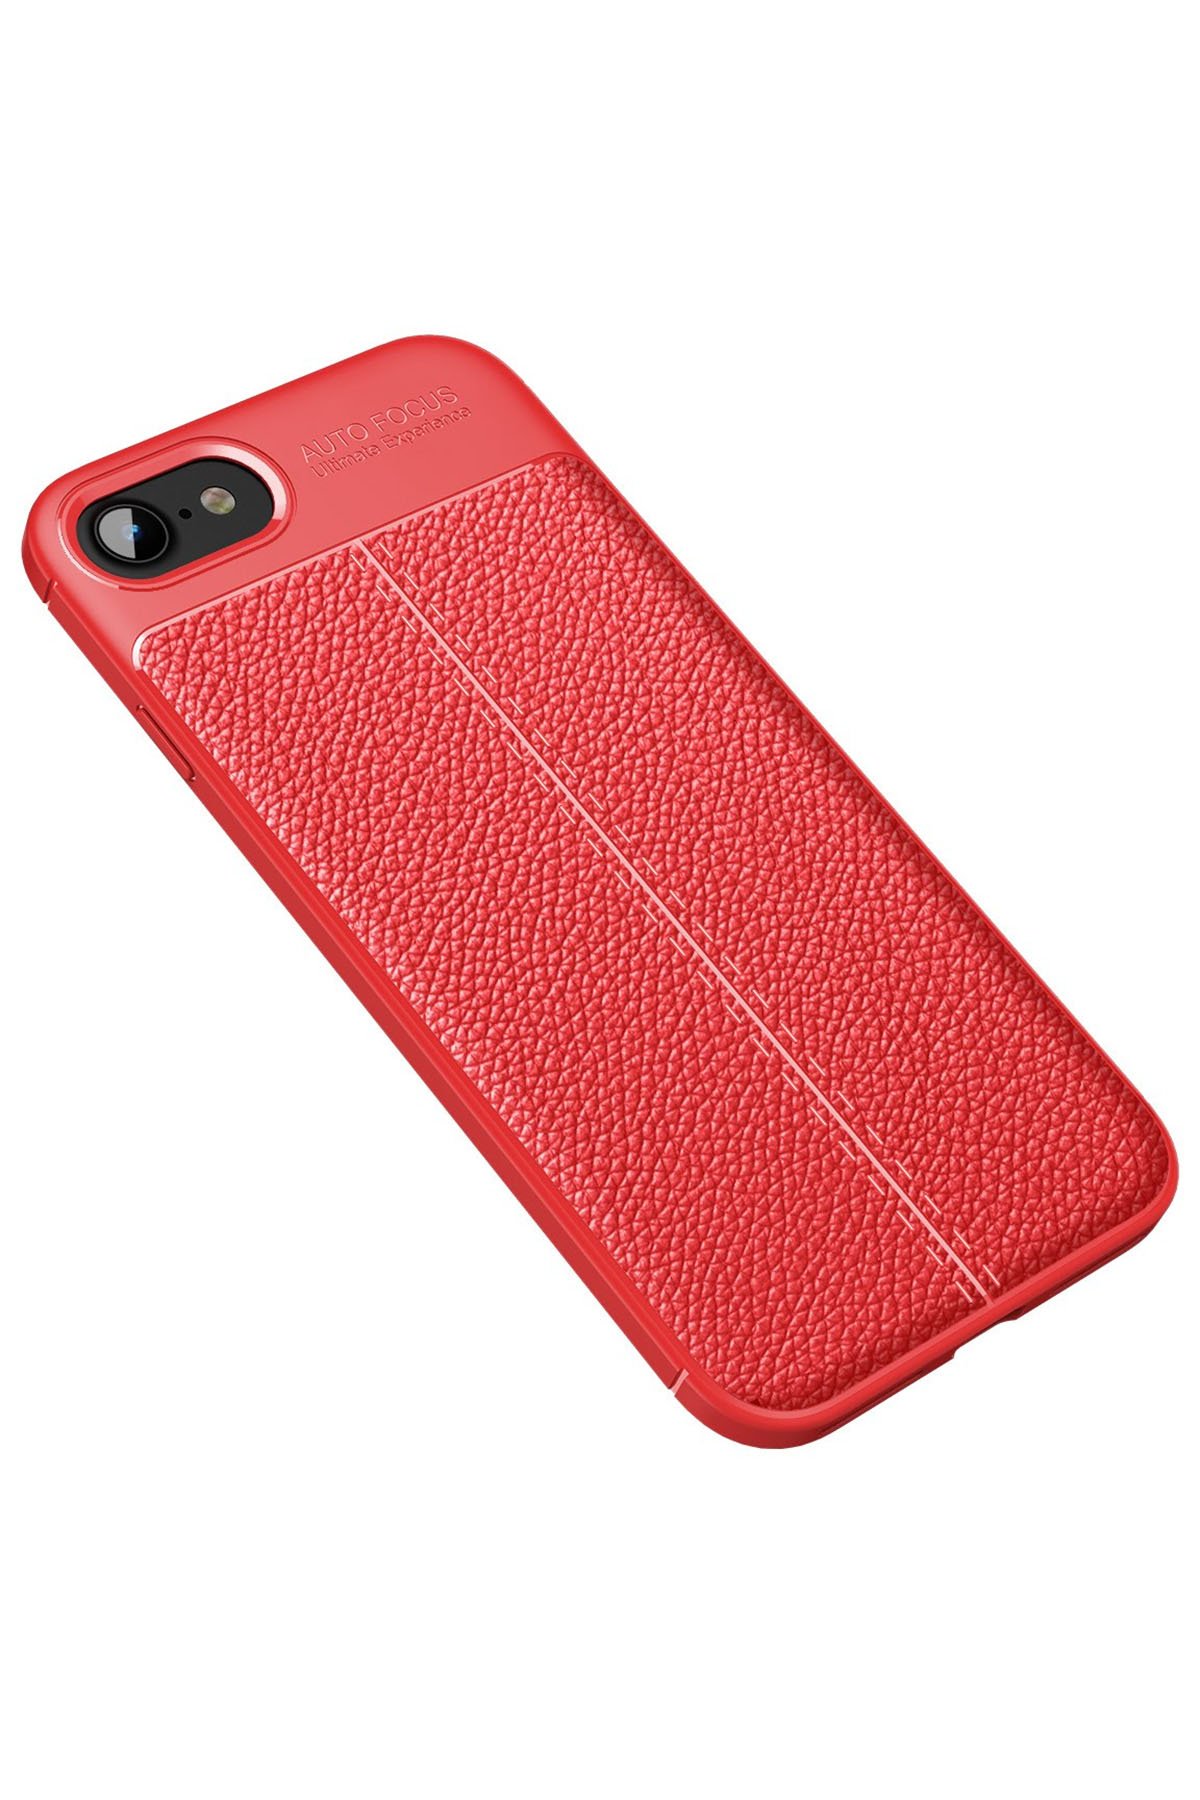 Newface iPhone SE 2020 Kılıf Pars Lens Yüzüklü Silikon - Kırmızı